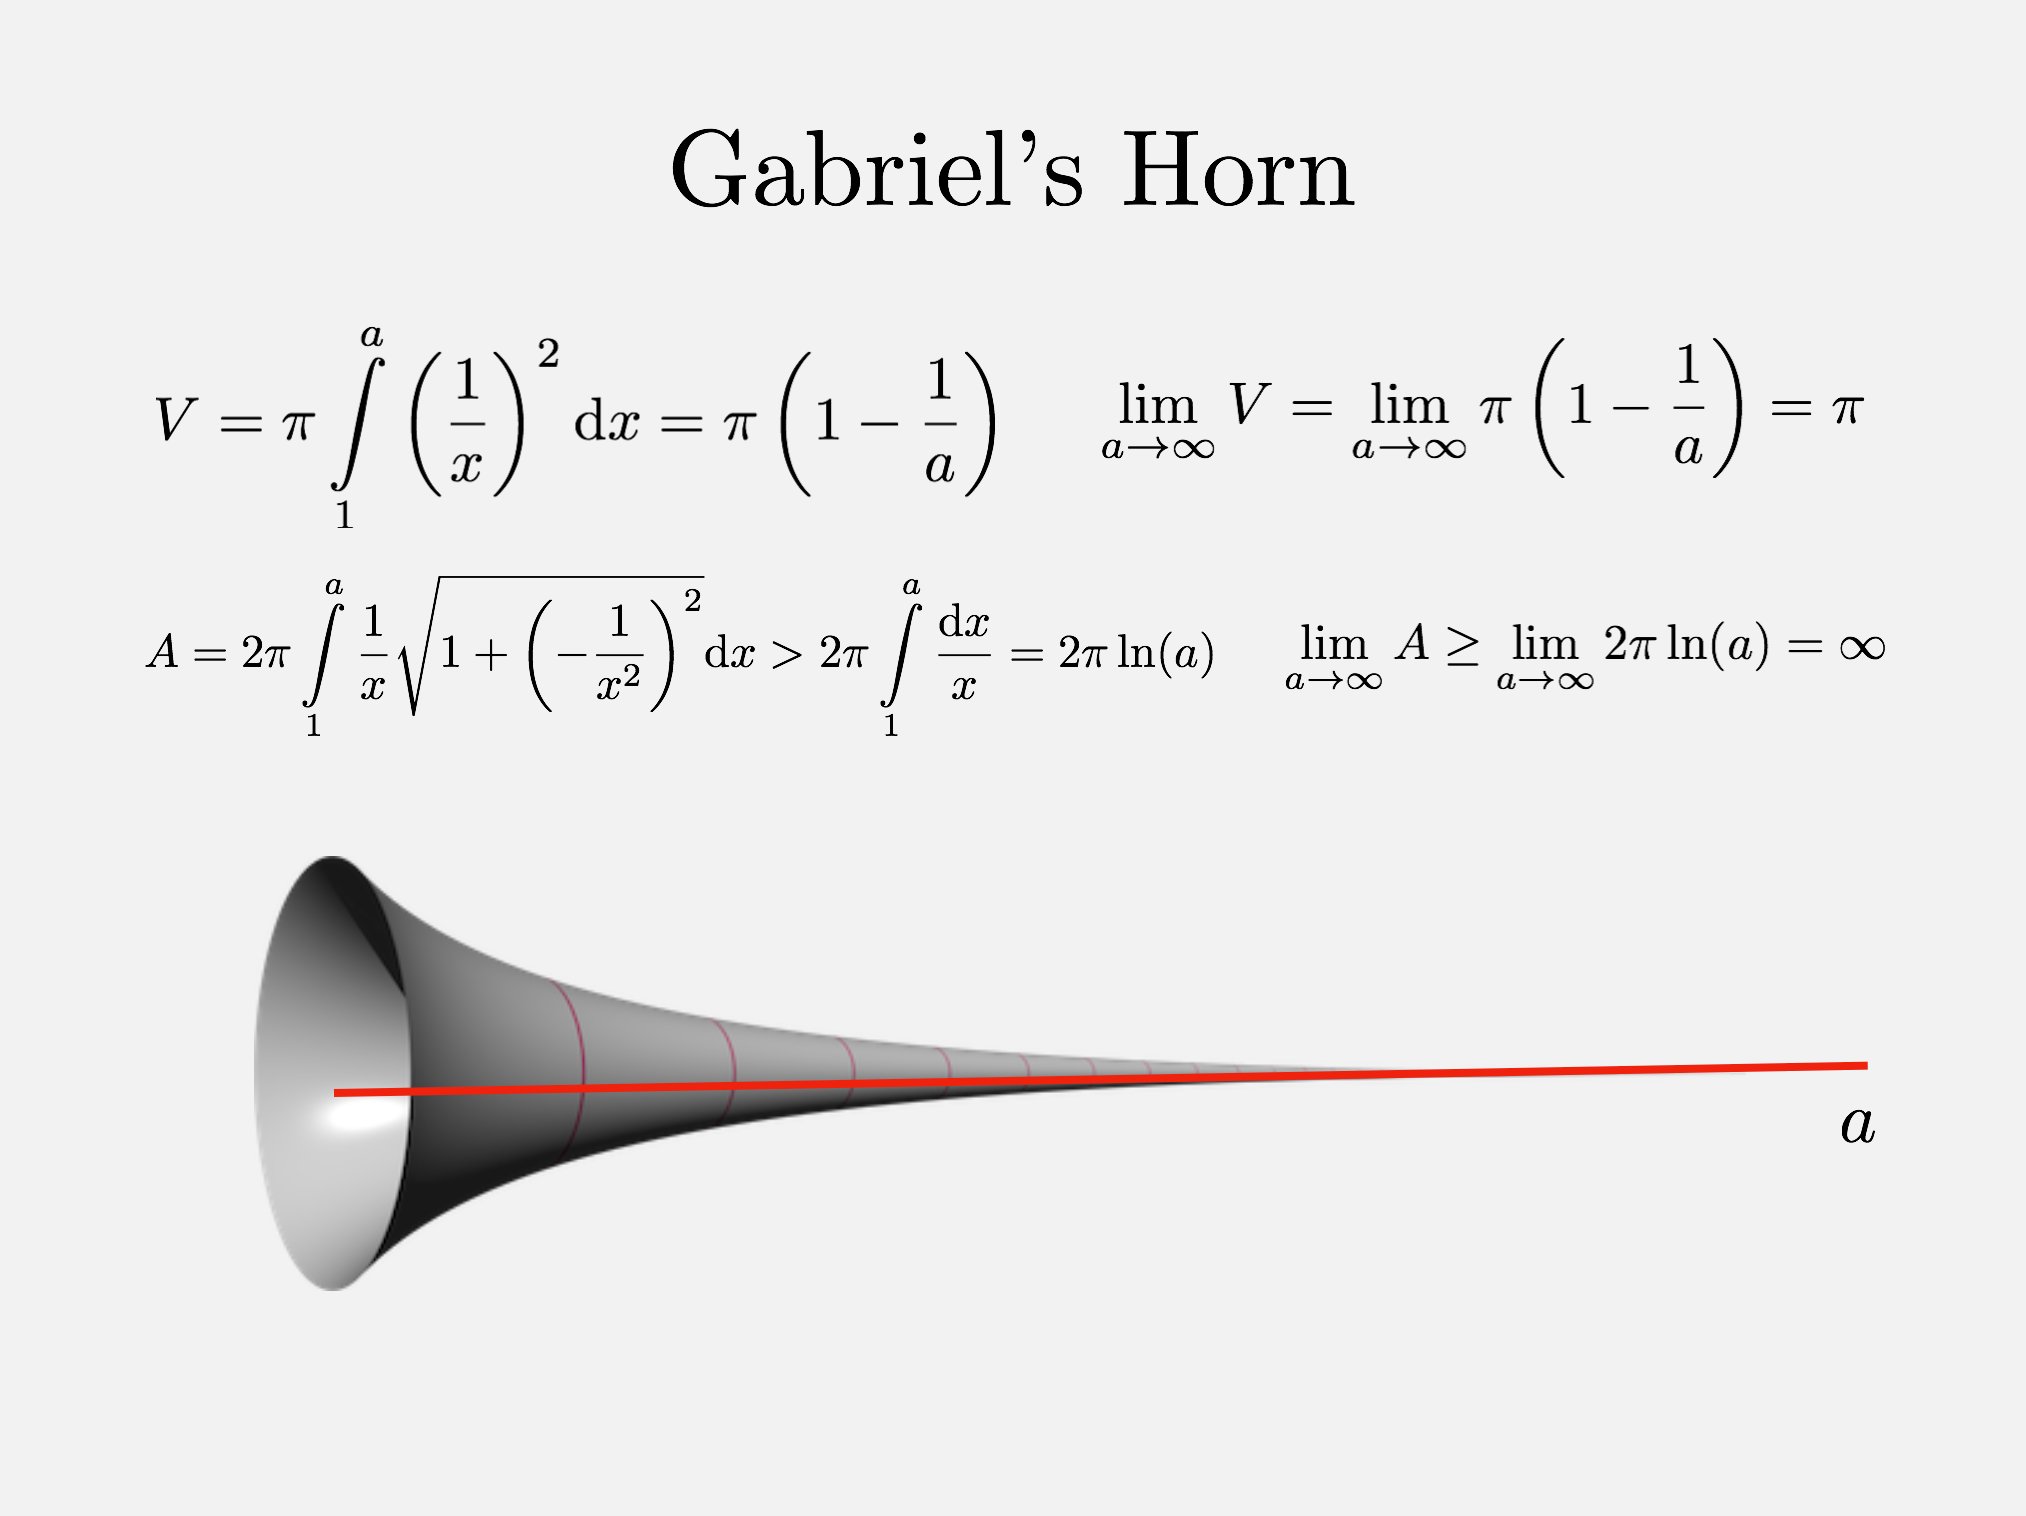 Il corno di Gabriele: volume finito ma area infinita 🎺